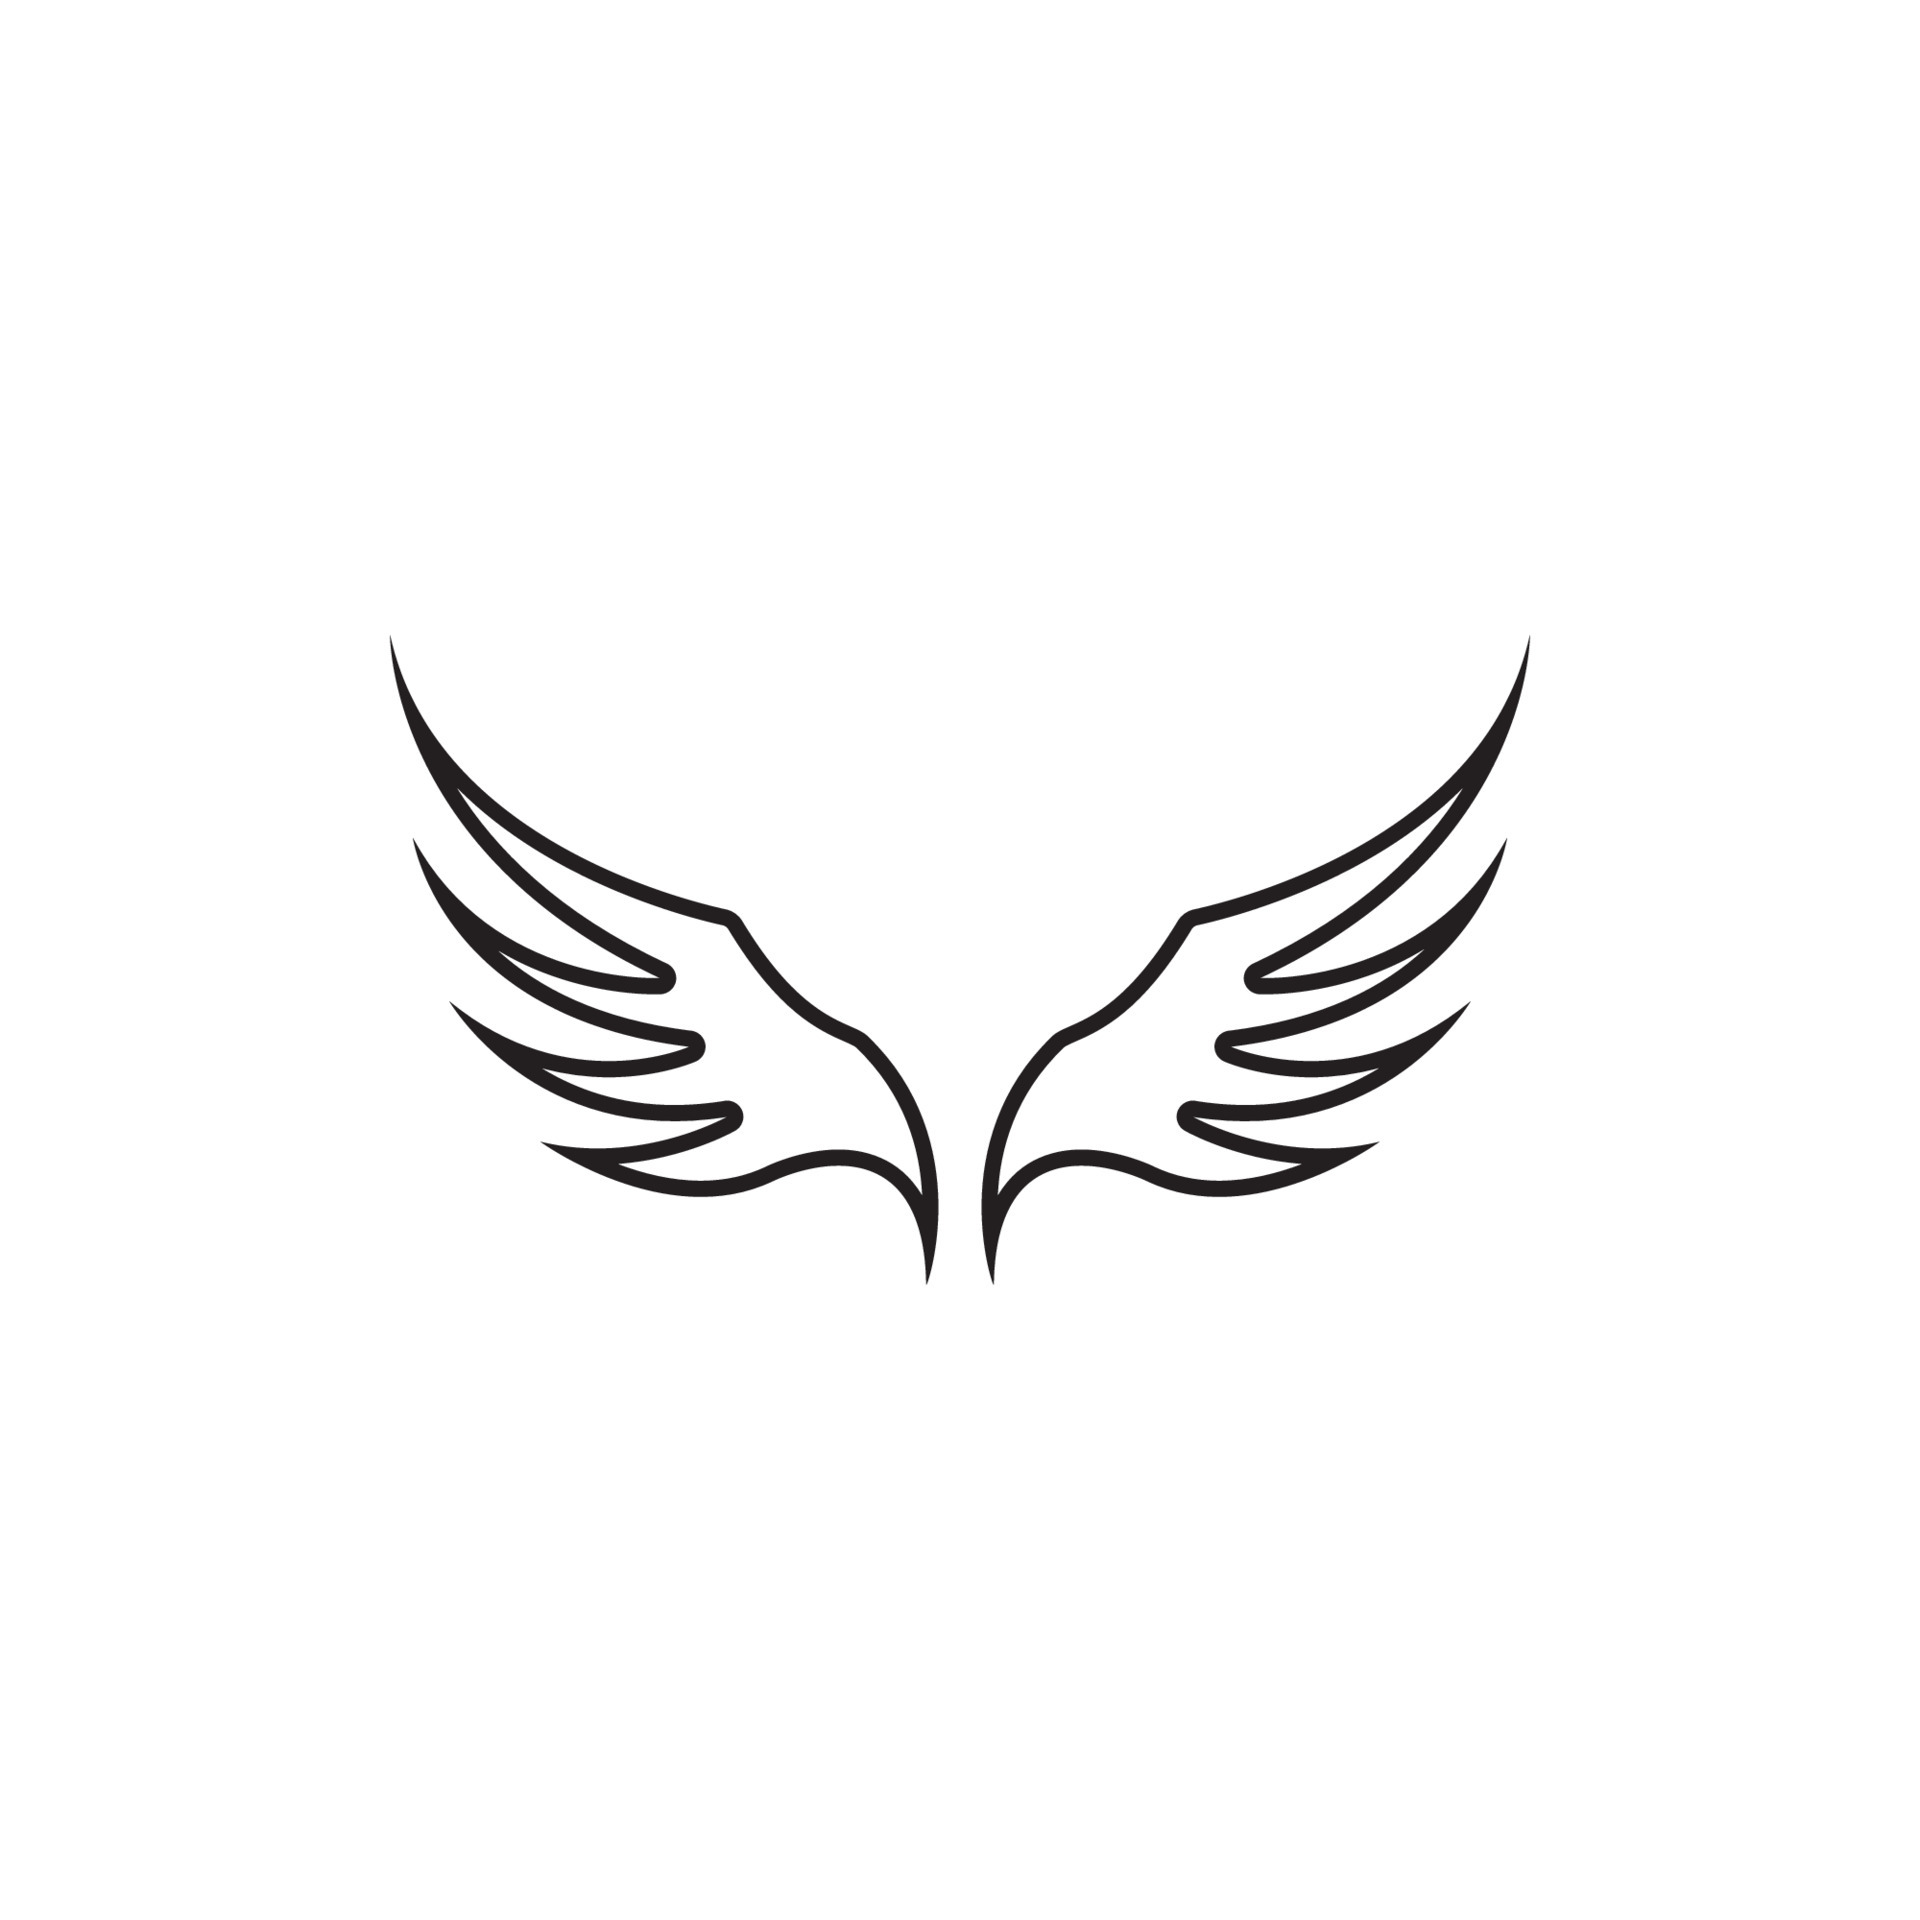 Wing illustration logo vector design 5144186 Vector Art at Vecteezy